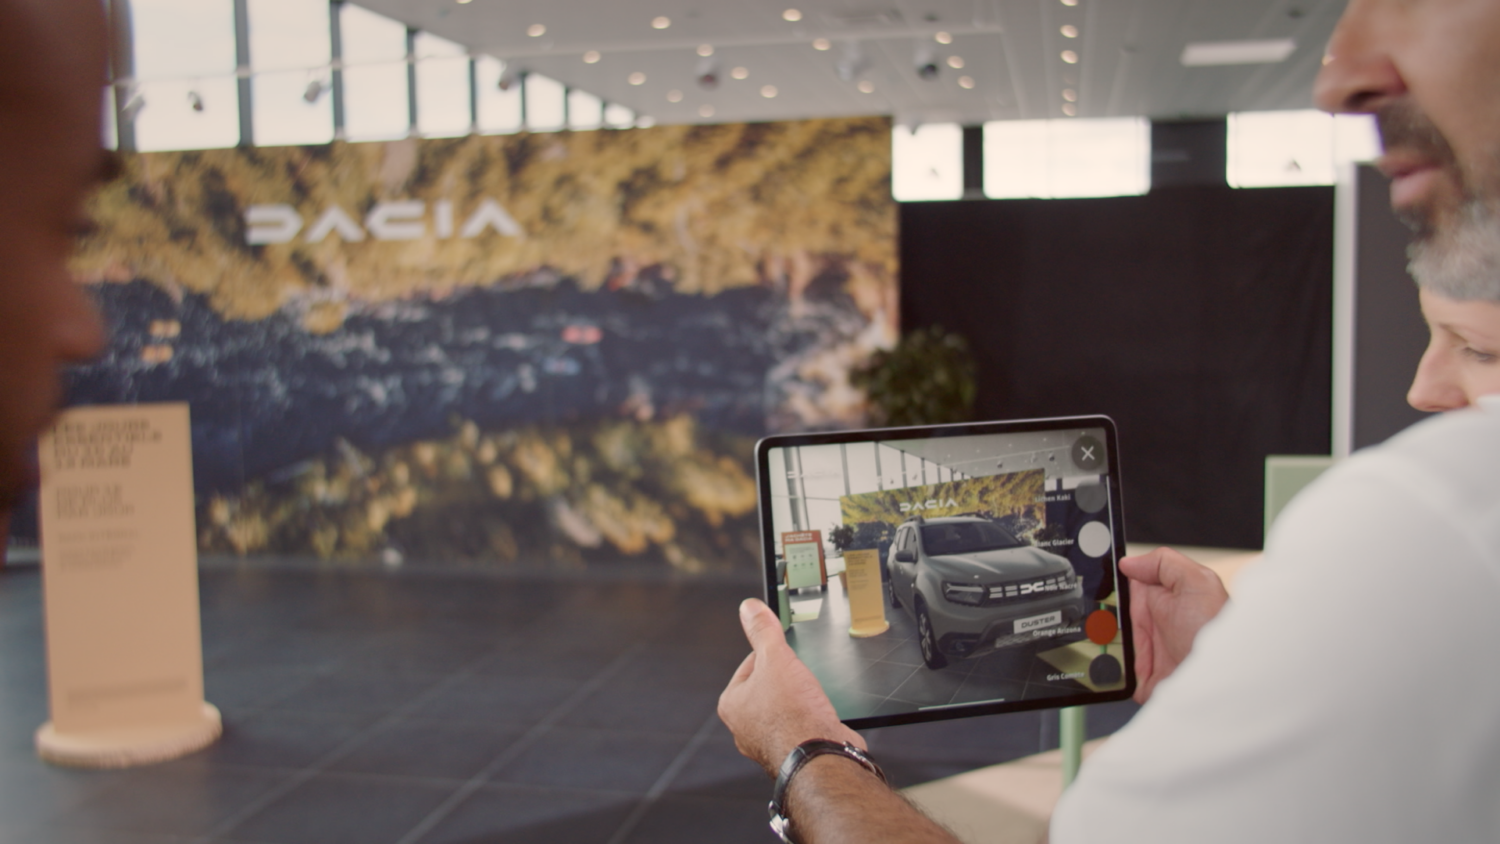 2022 - Dacia AR : l’application de réalité augmentée, simple et utile